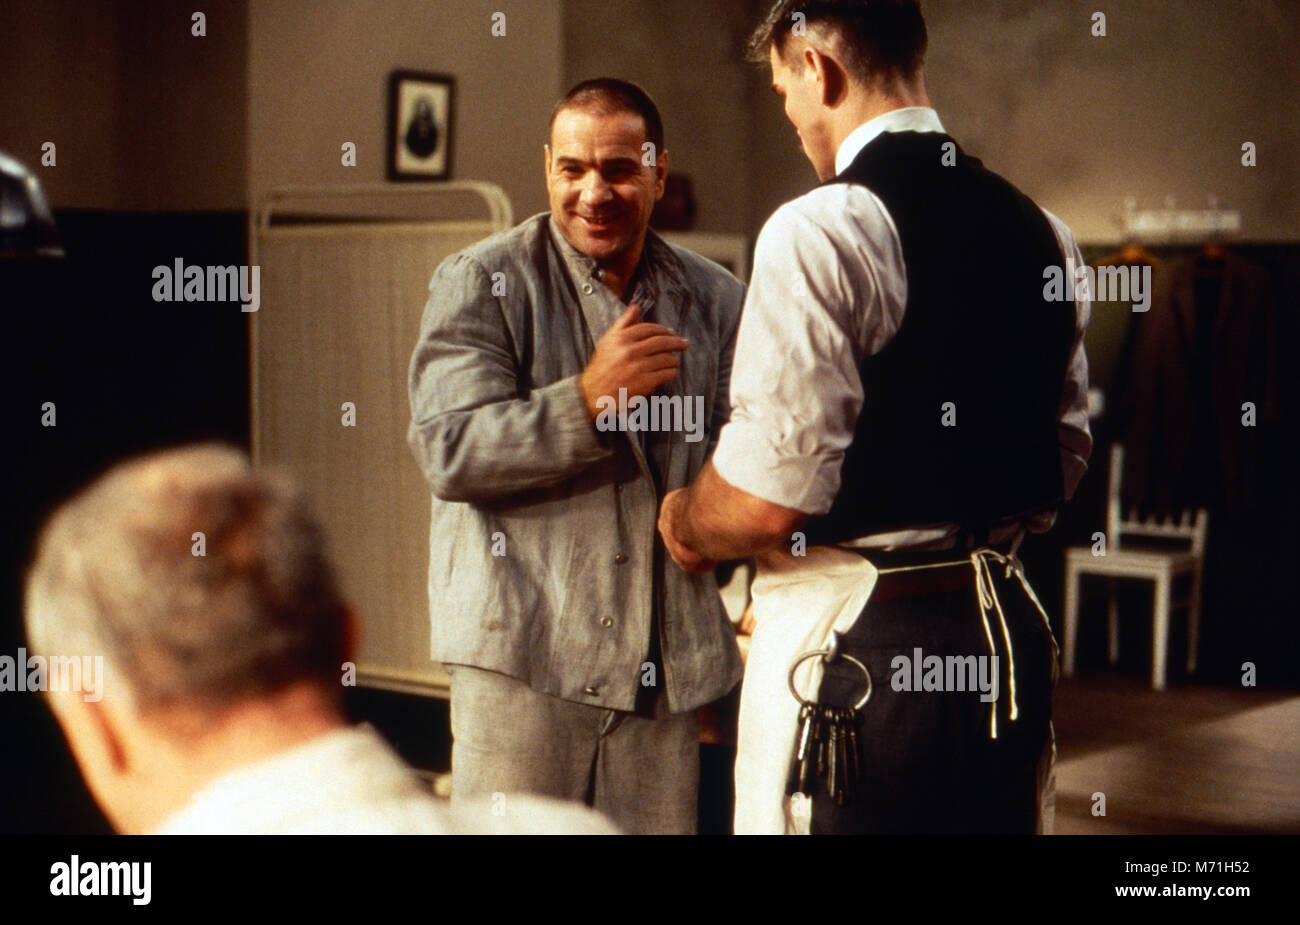 Der Totmacher, Fernsehfilm, Deutschland 1995, Regie: Romuald Karmakar, Darsteller: Götz George Stock Photo